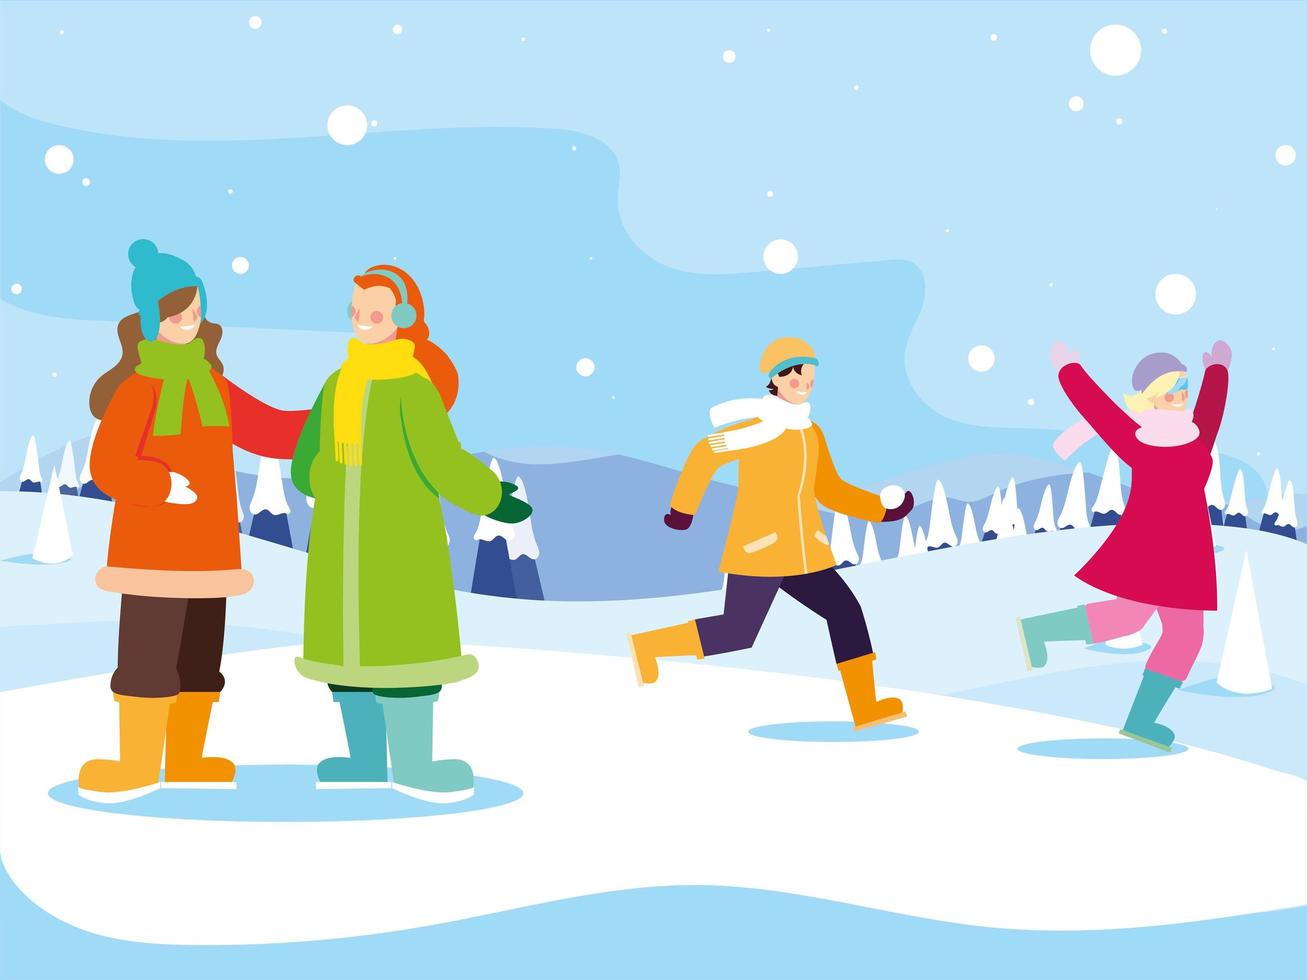 groep mensen met winterkleren in landschap met sneeuwval vector